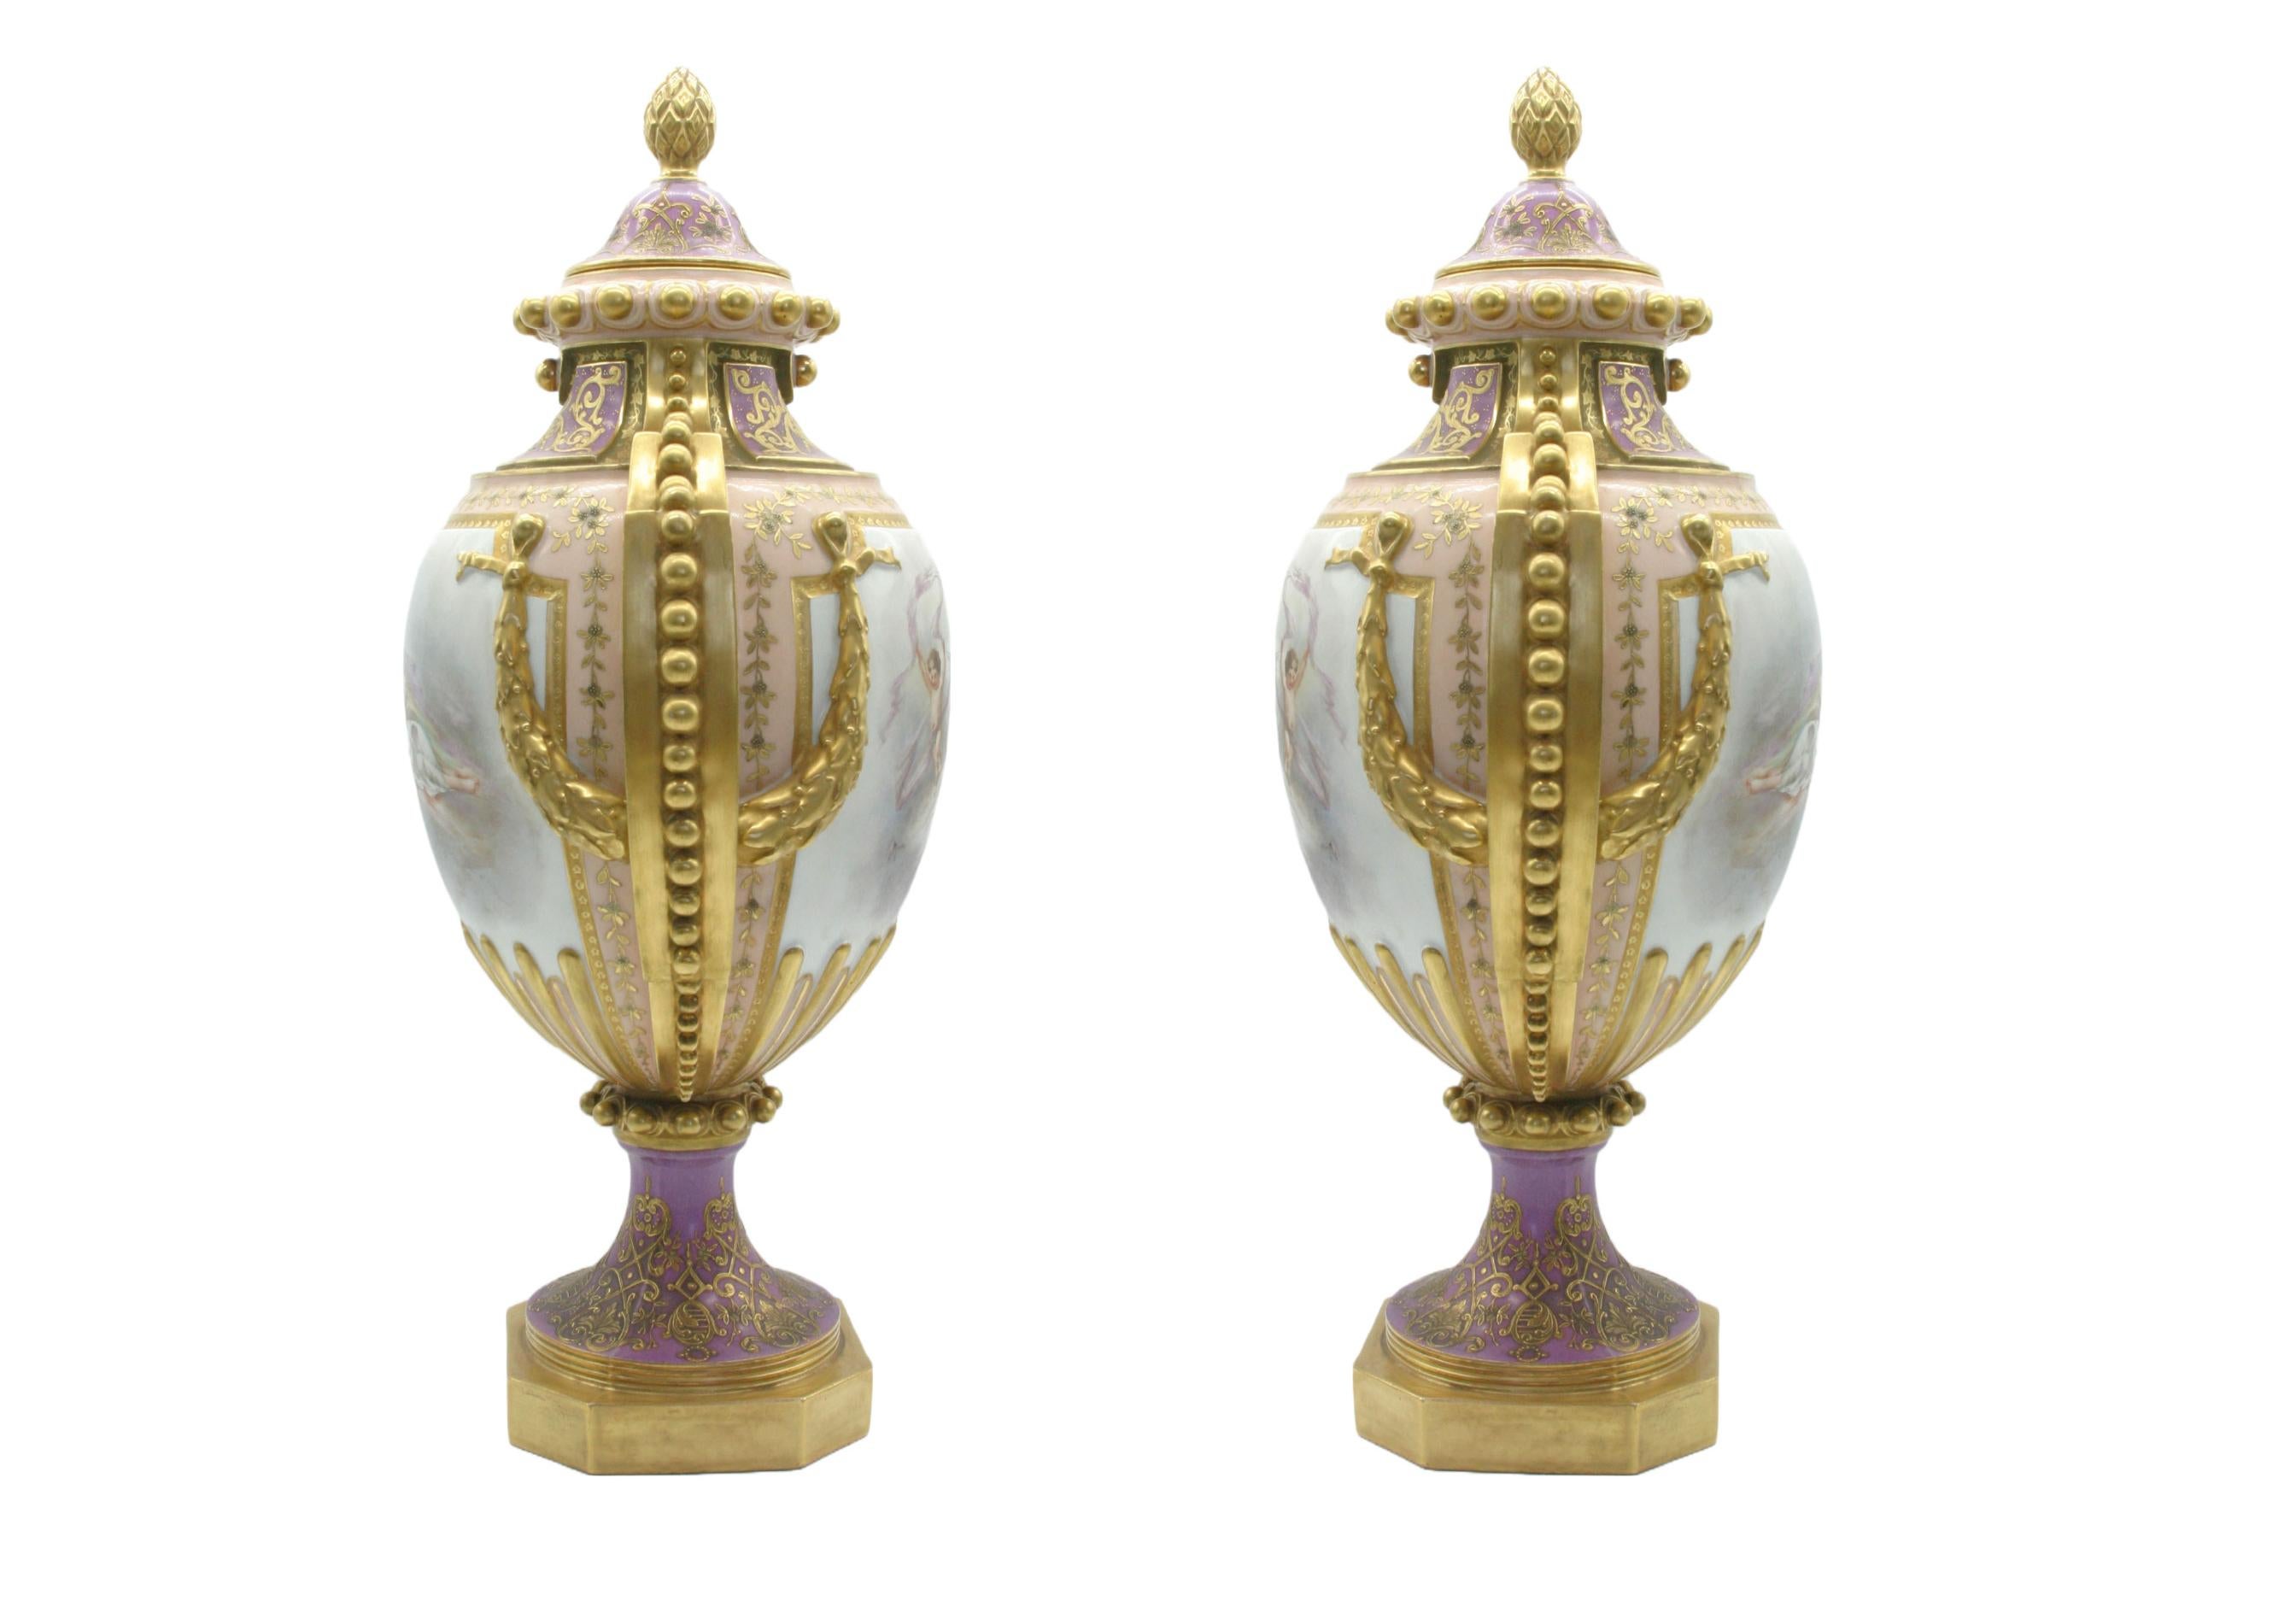 Großes Paar frühes 19. Jahrhundert vergoldetes handbemaltes und handgefertigtes Porzellan bedeckt dekorative Urnen / Vasen . Jede Urne weist außen gemalte Szenendetails mit vergoldeten Seitengriffen auf. Jeweils signiert mit Pseudo-Sèvres-Marke und